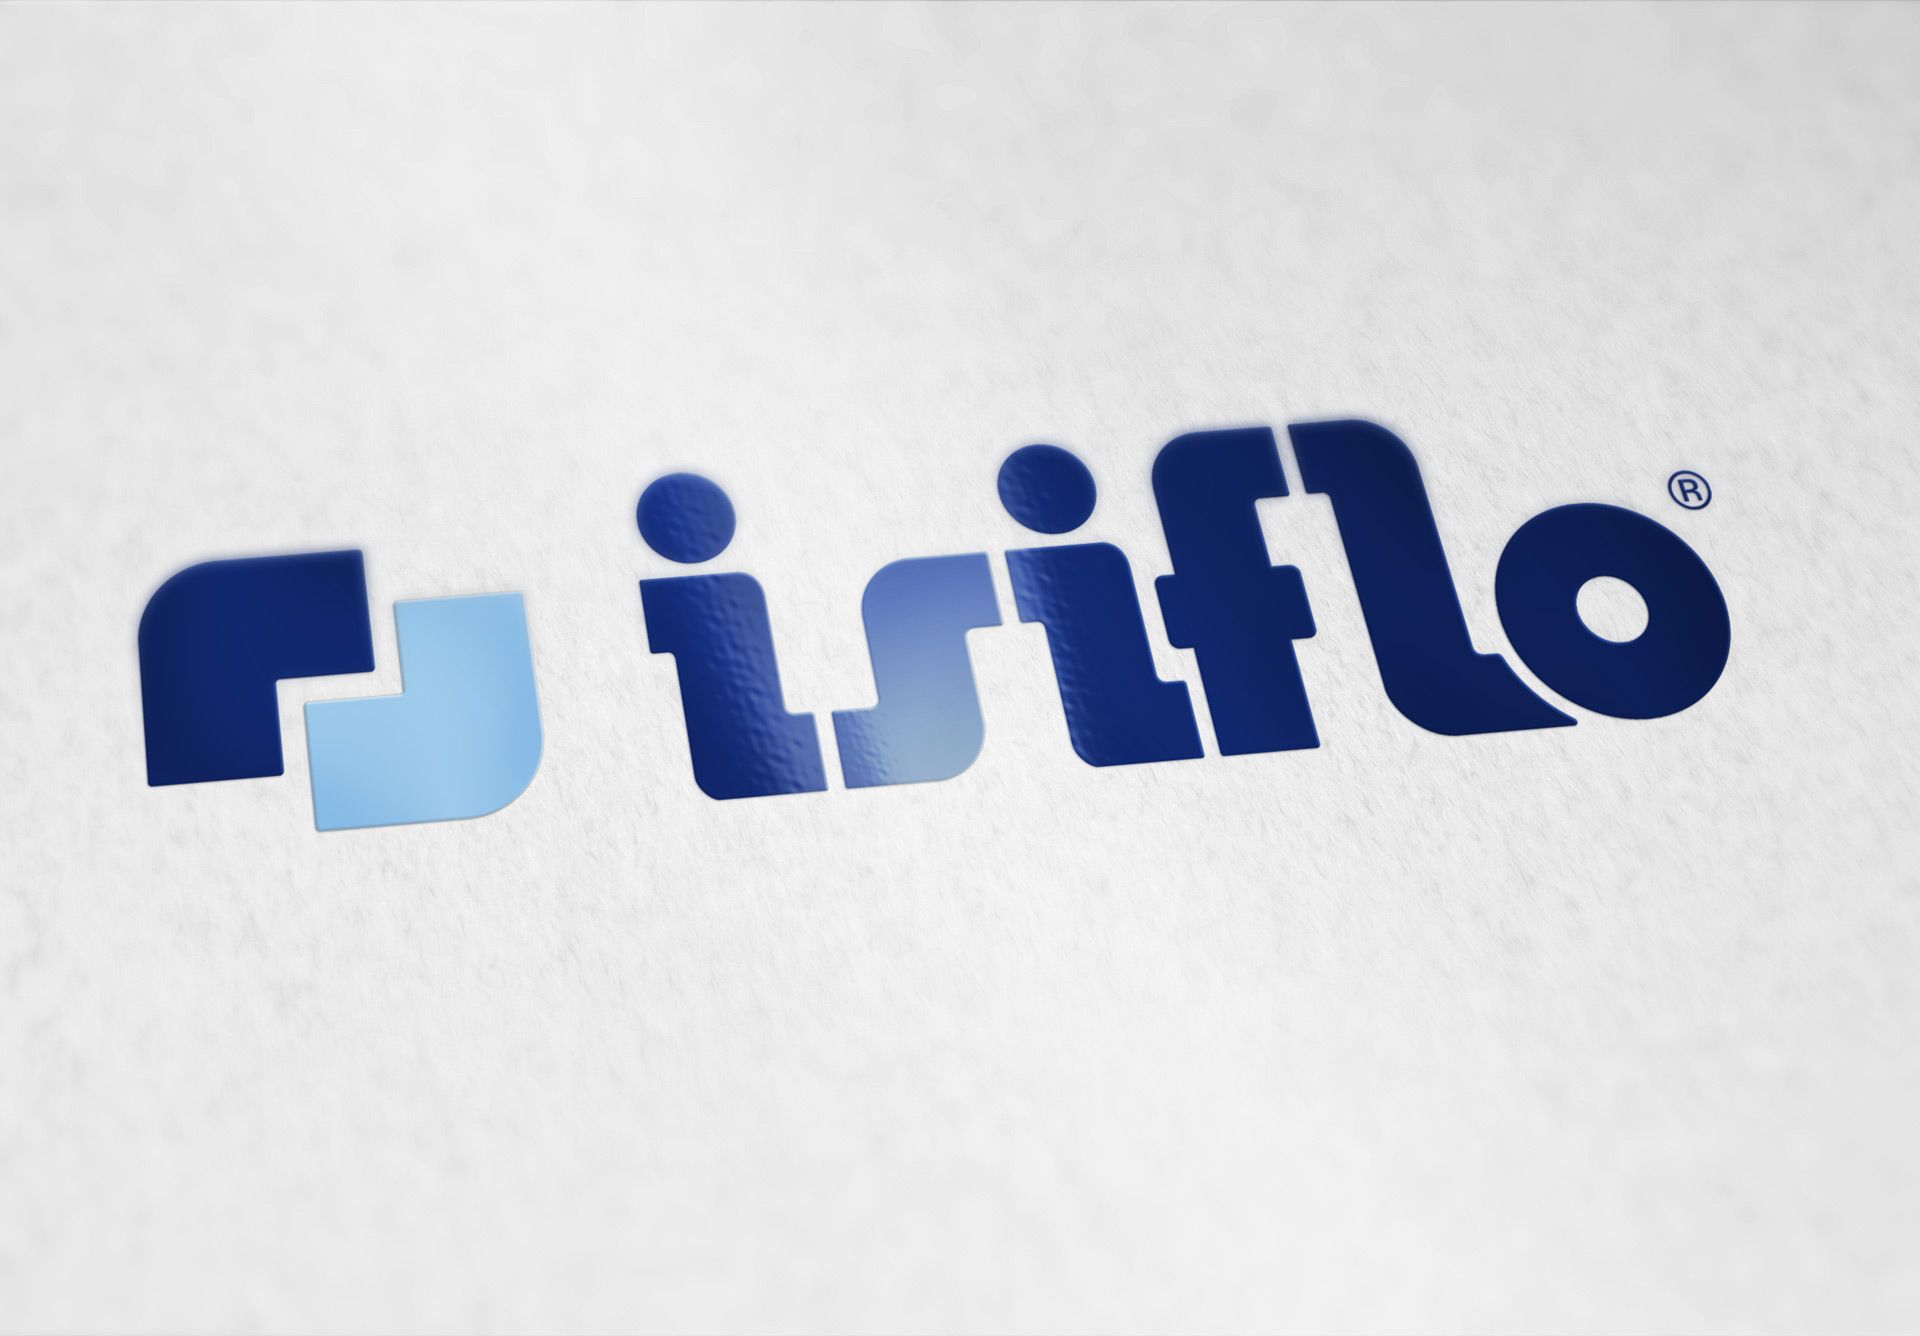 ISIFLO logo